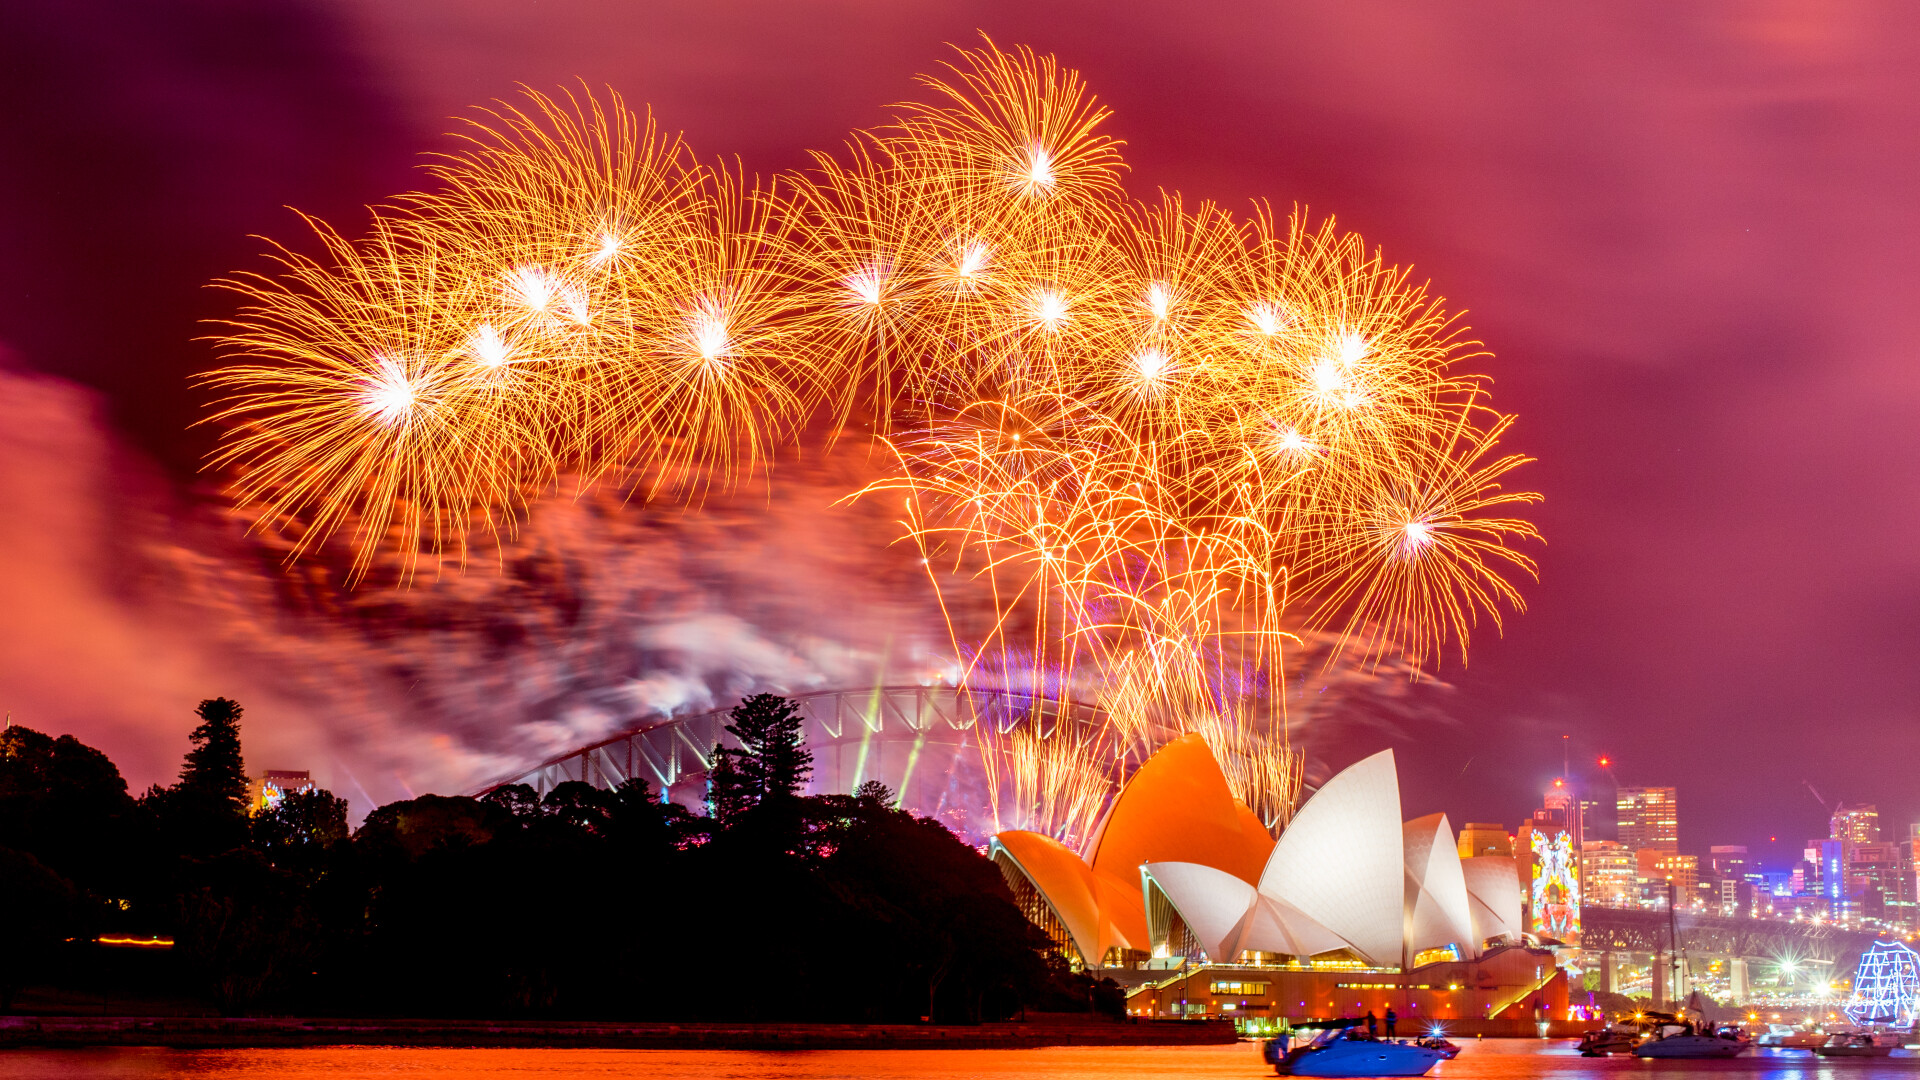 Lumea a intrat în 2023 cu focuri uriașe de artificii. Curcubeu de lumină în Sydney VIDEO